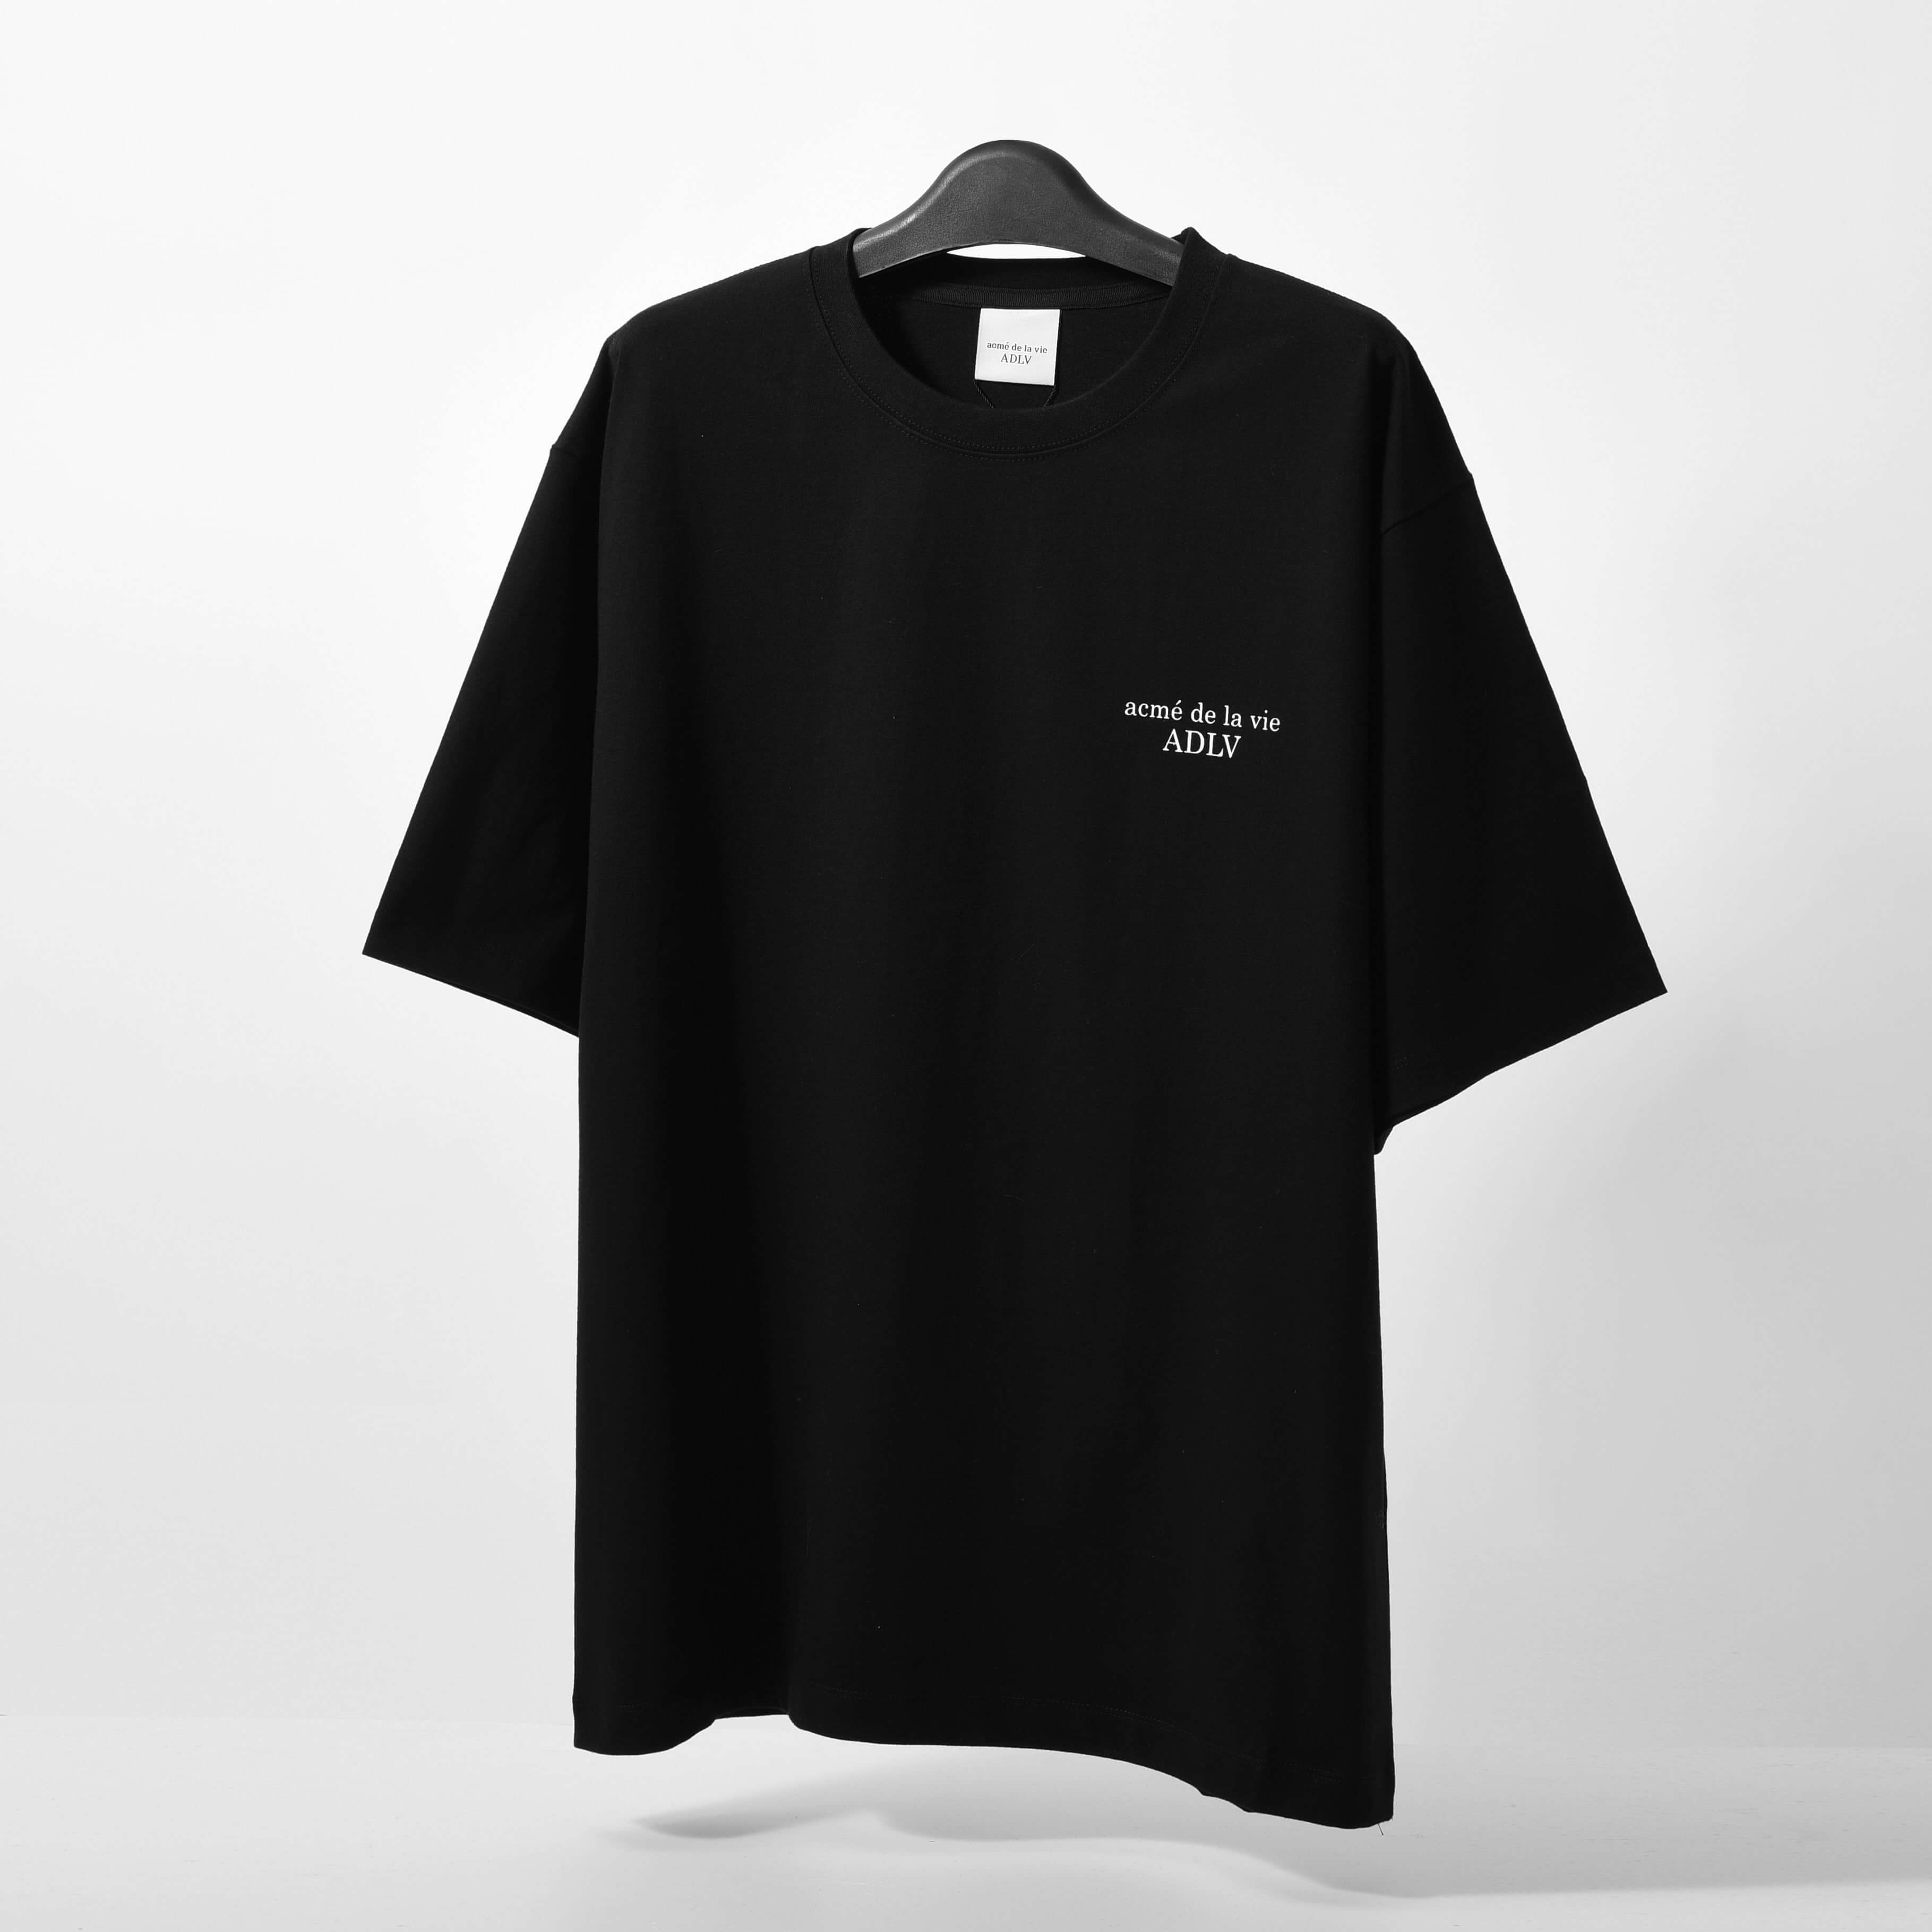 ADLV Basic Tshirt - Black